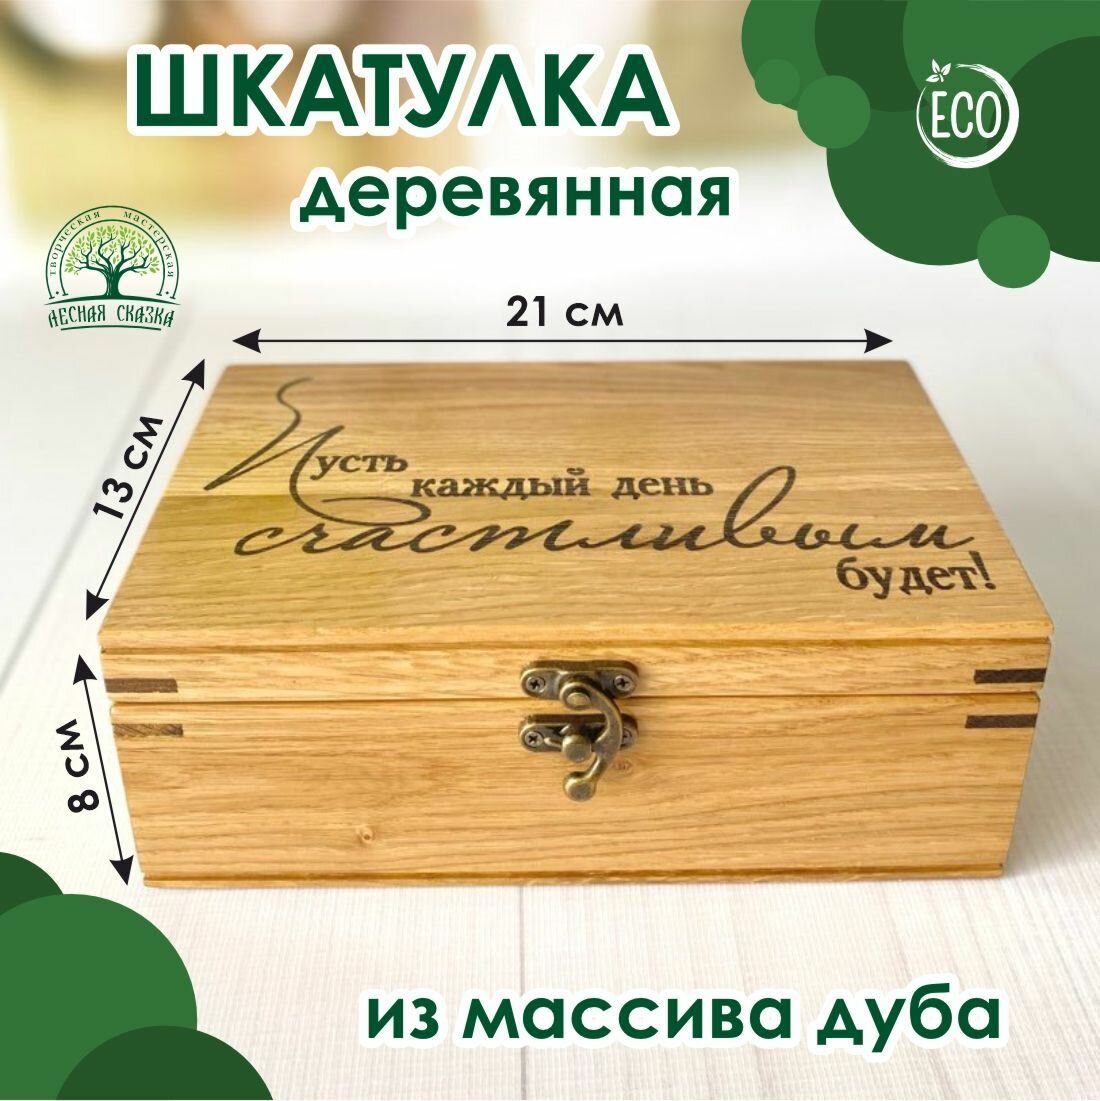 Шкатулка деревянная "Пусть каждый день счастливым будет", массив дуба, 21х13 см